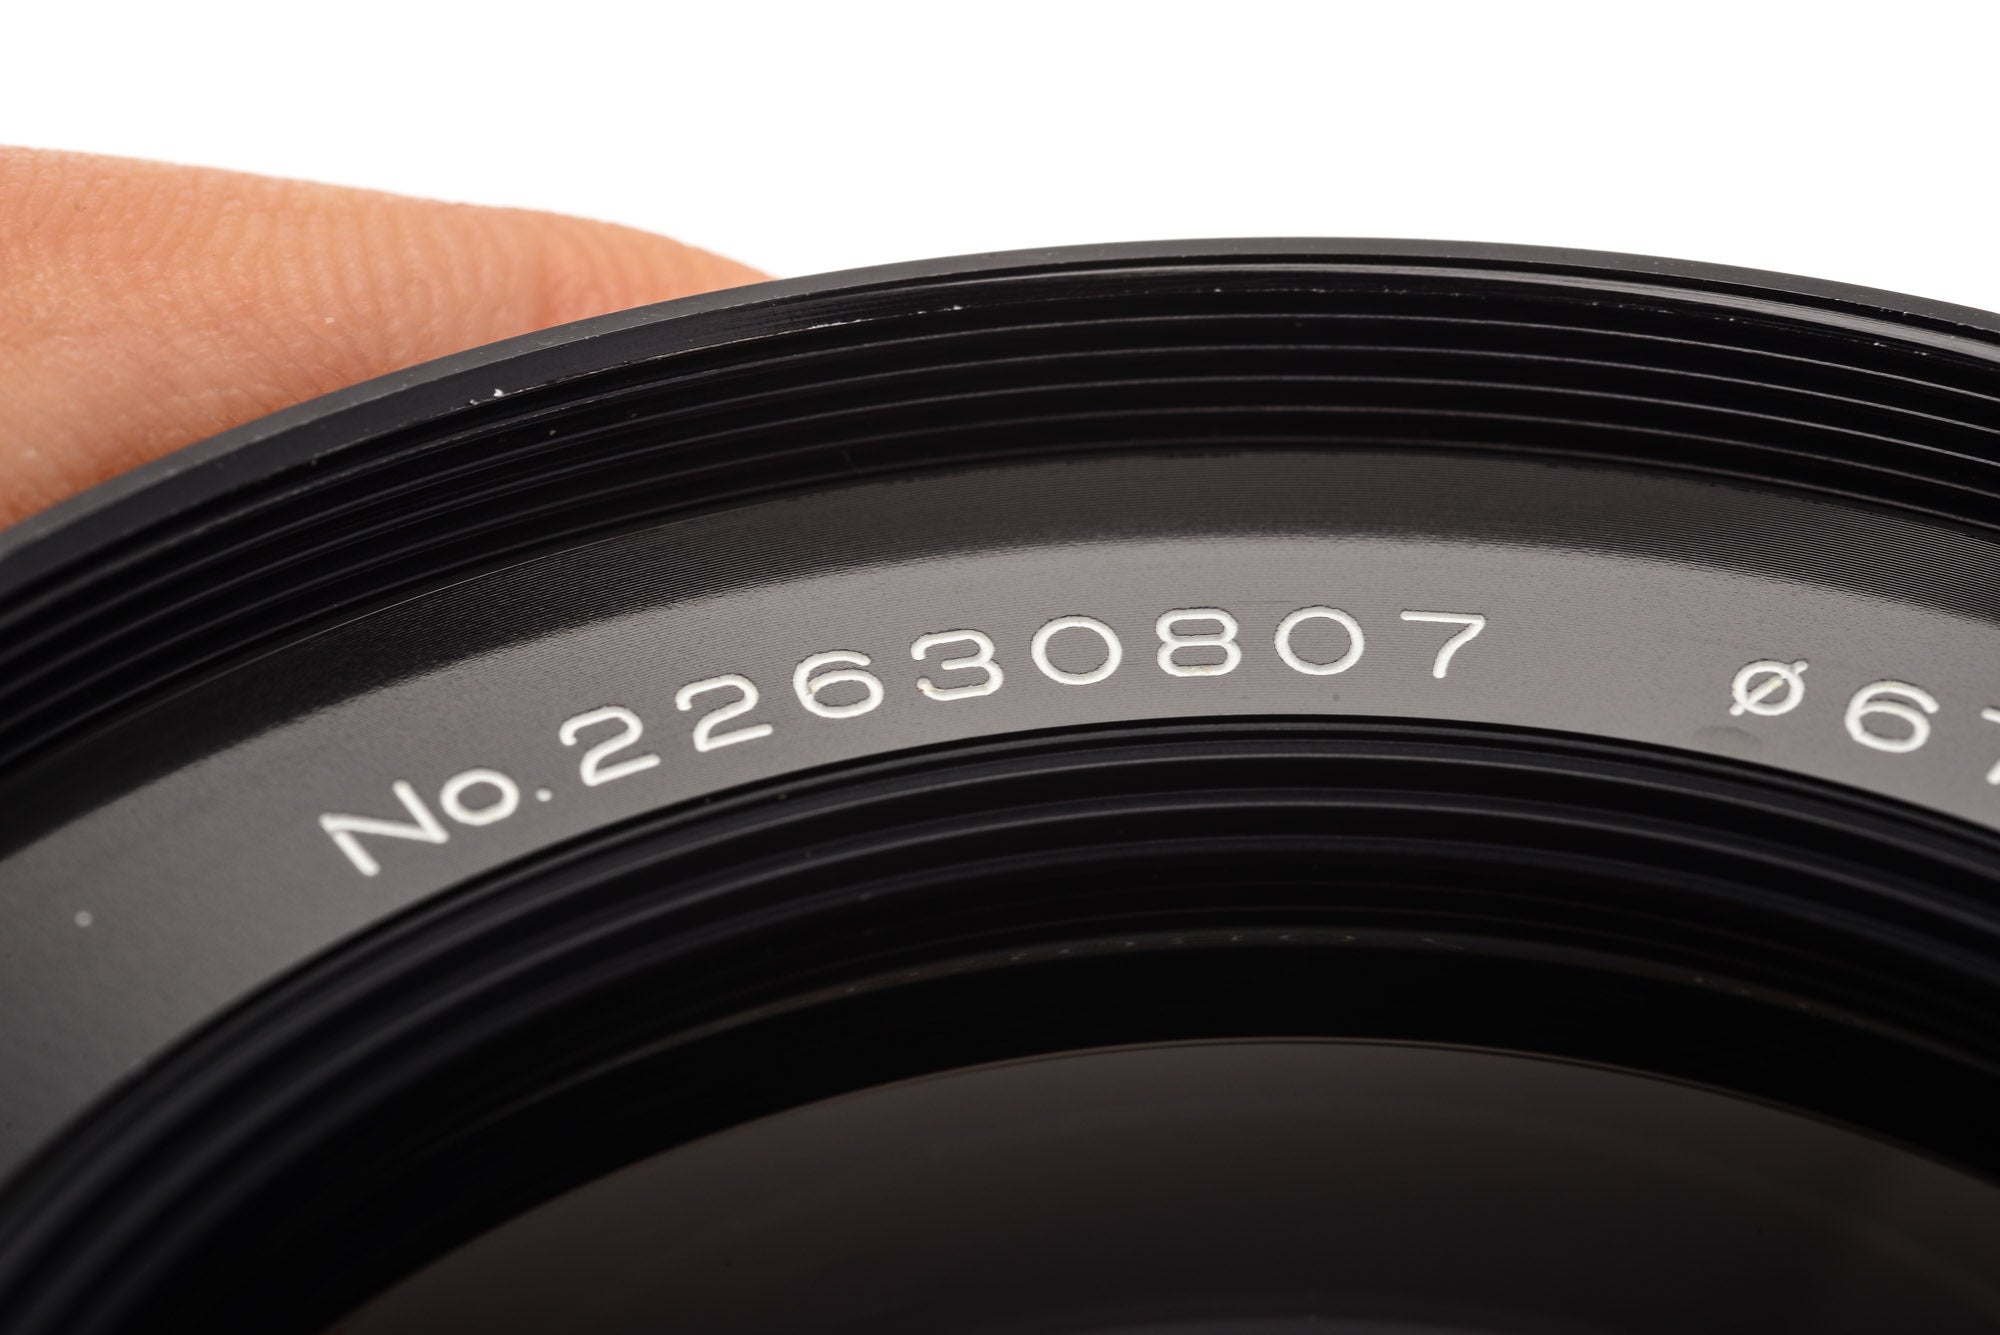 Vivitar 28mm f2.5 Auto Wide-Angle – Kamerastore